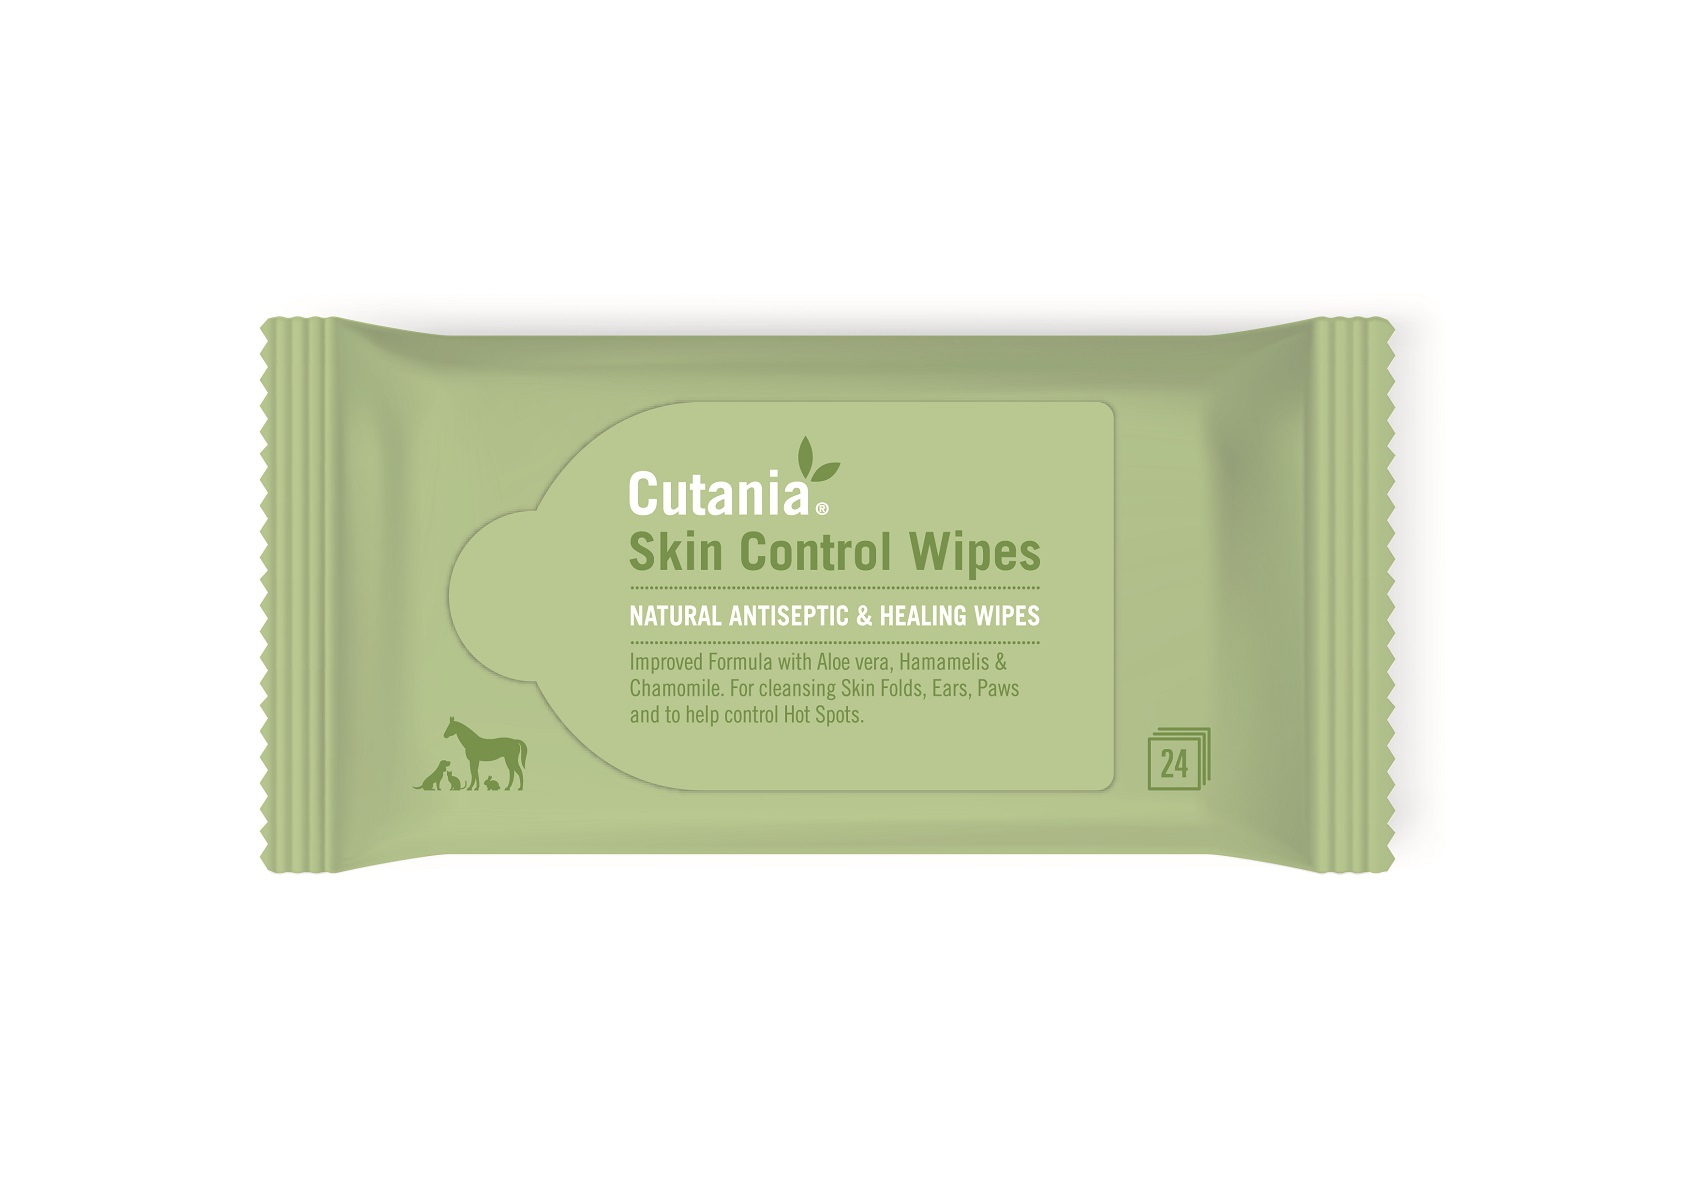 CUTANIA SkinControl Wipes Hygienetücher für Hunde, Katzen, Pferde und andere Tiere